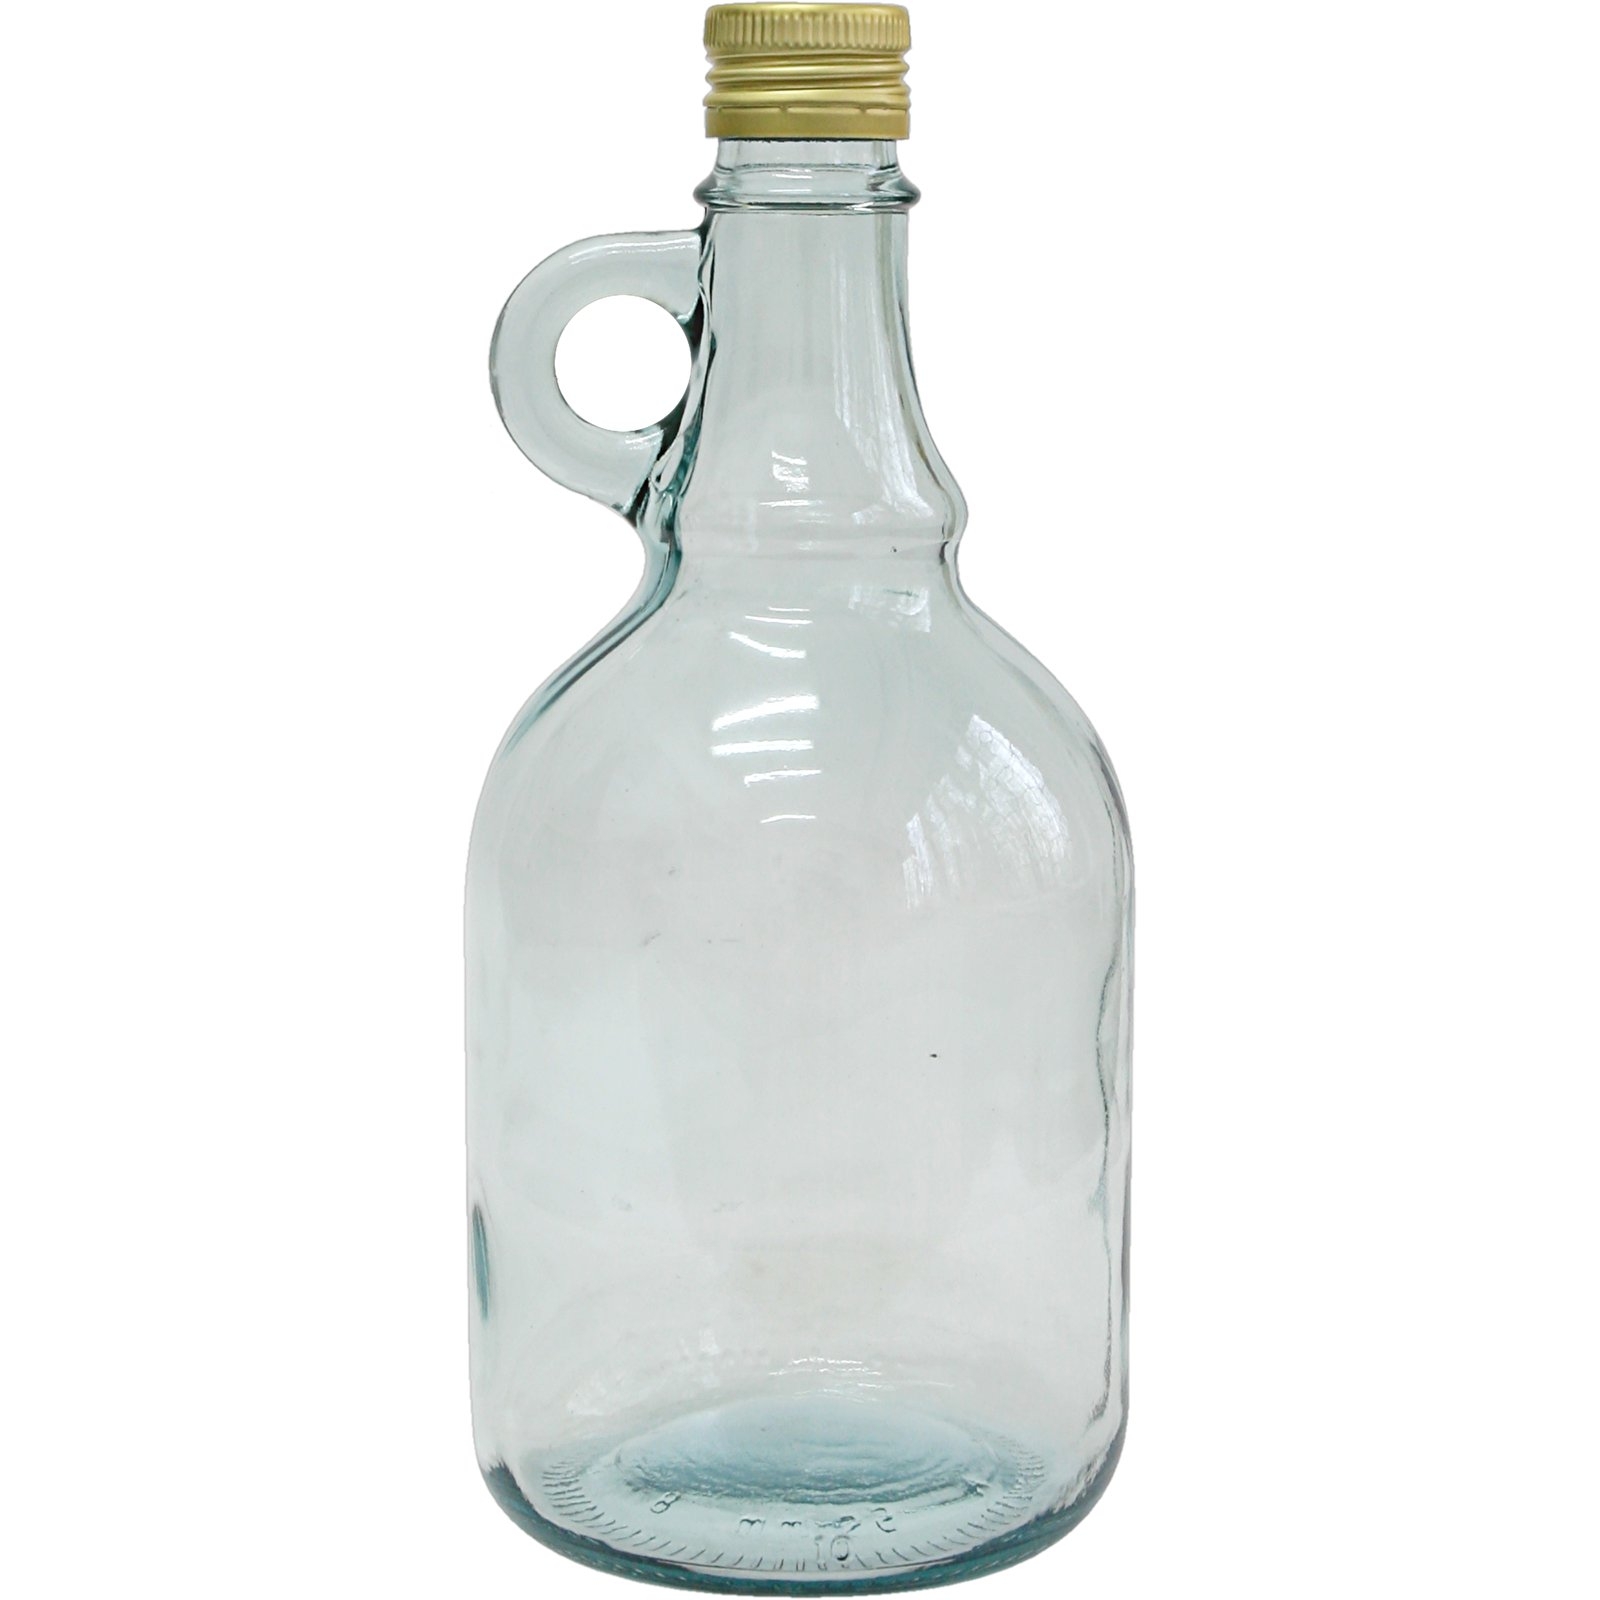 Sticlă Gallone cu capac de răsucire - 1 litru - – Garden Seeds Market |  Transport gratuit